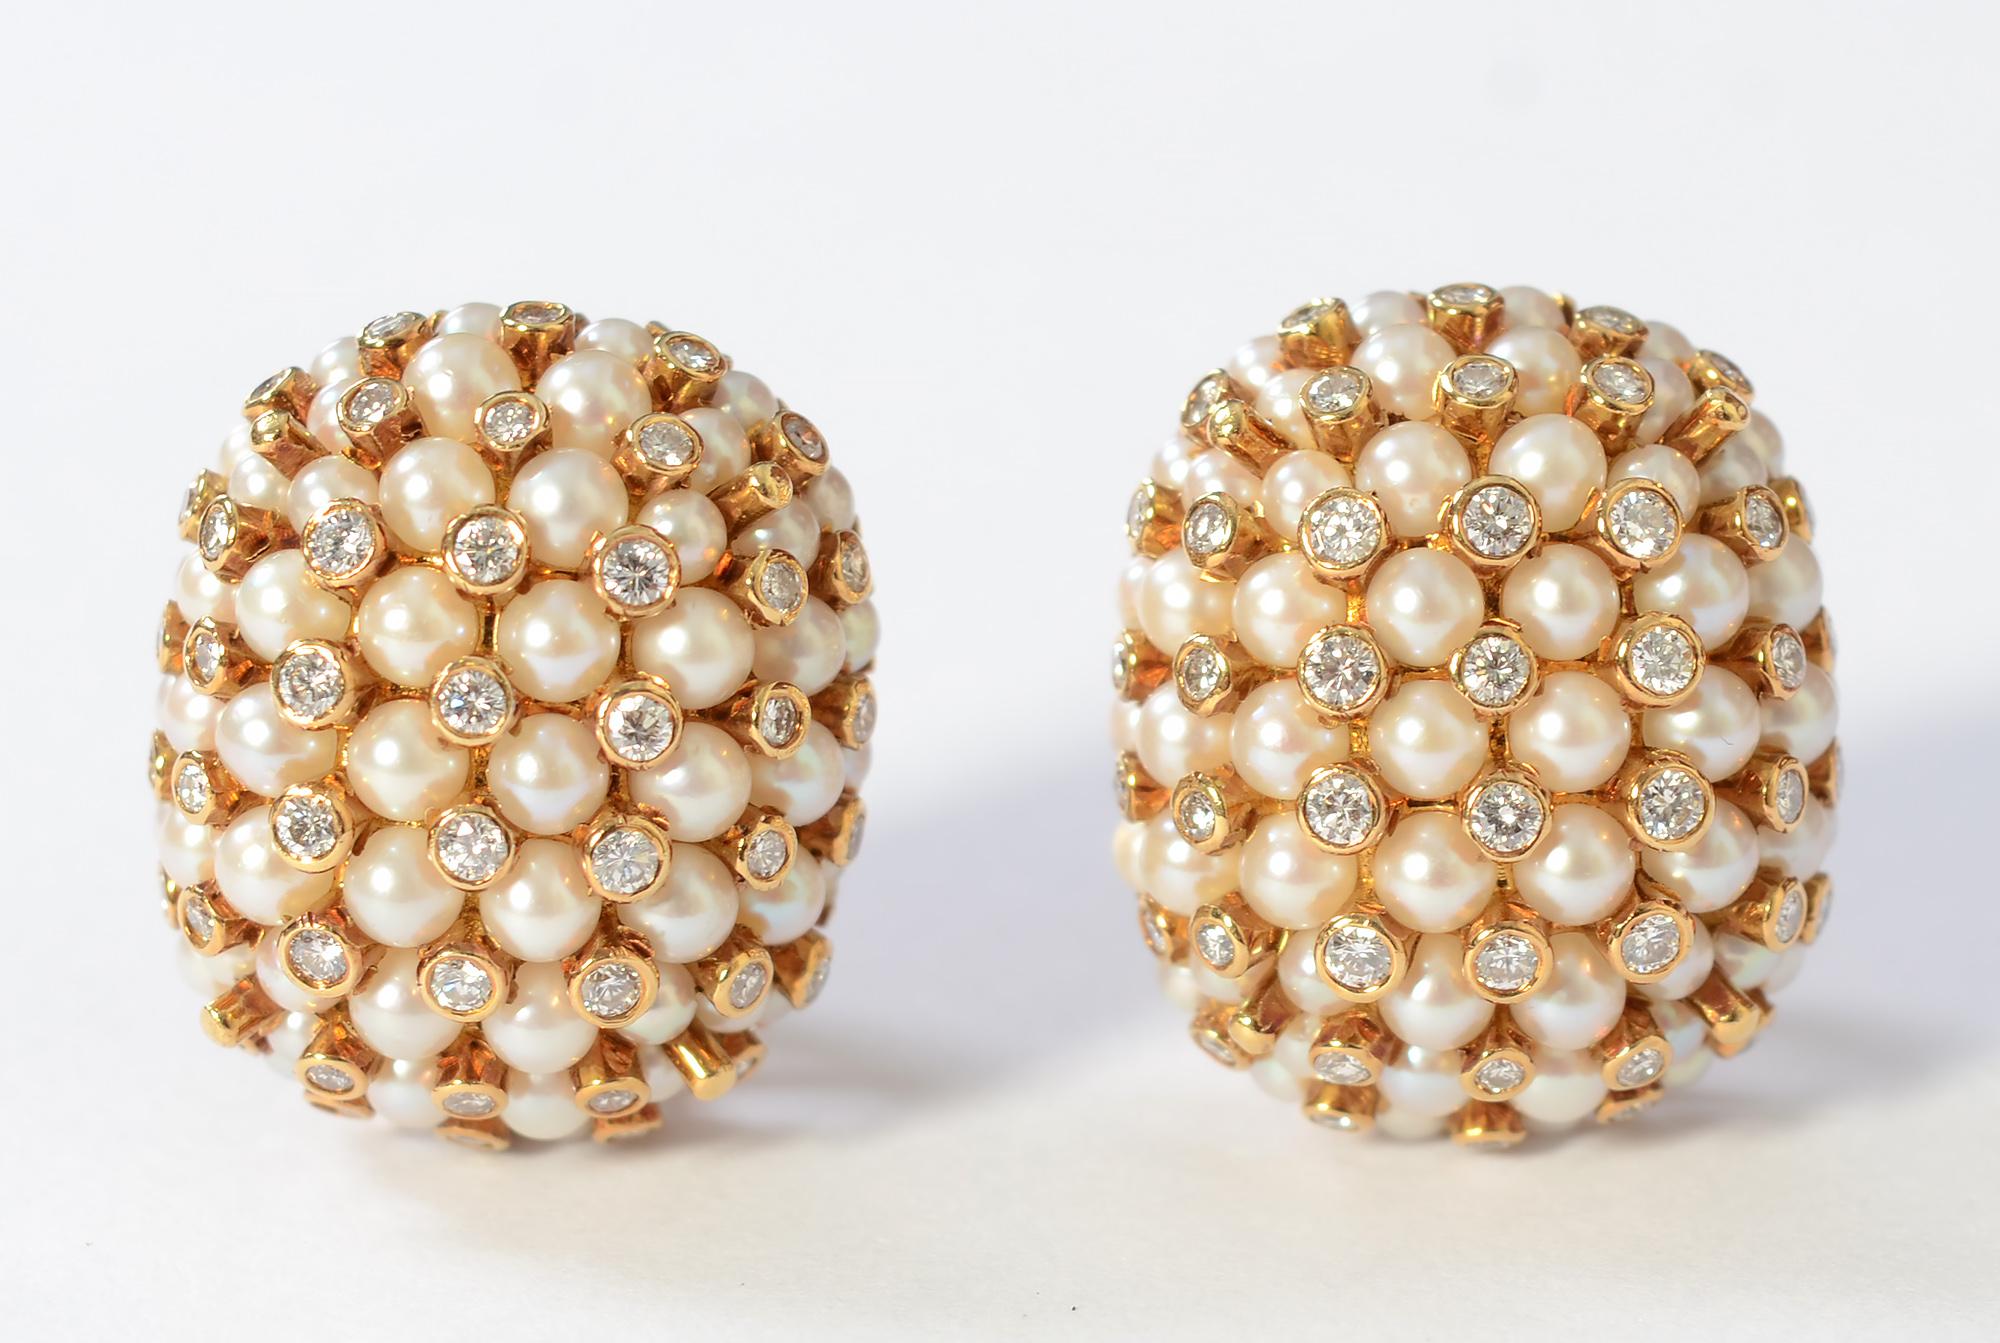 Schicke Perlenohrringe, die mit Diamanten durchsetzt sind, um ihnen einen schönen Glanz zu verleihen. Die Ohrringe sind 13/16